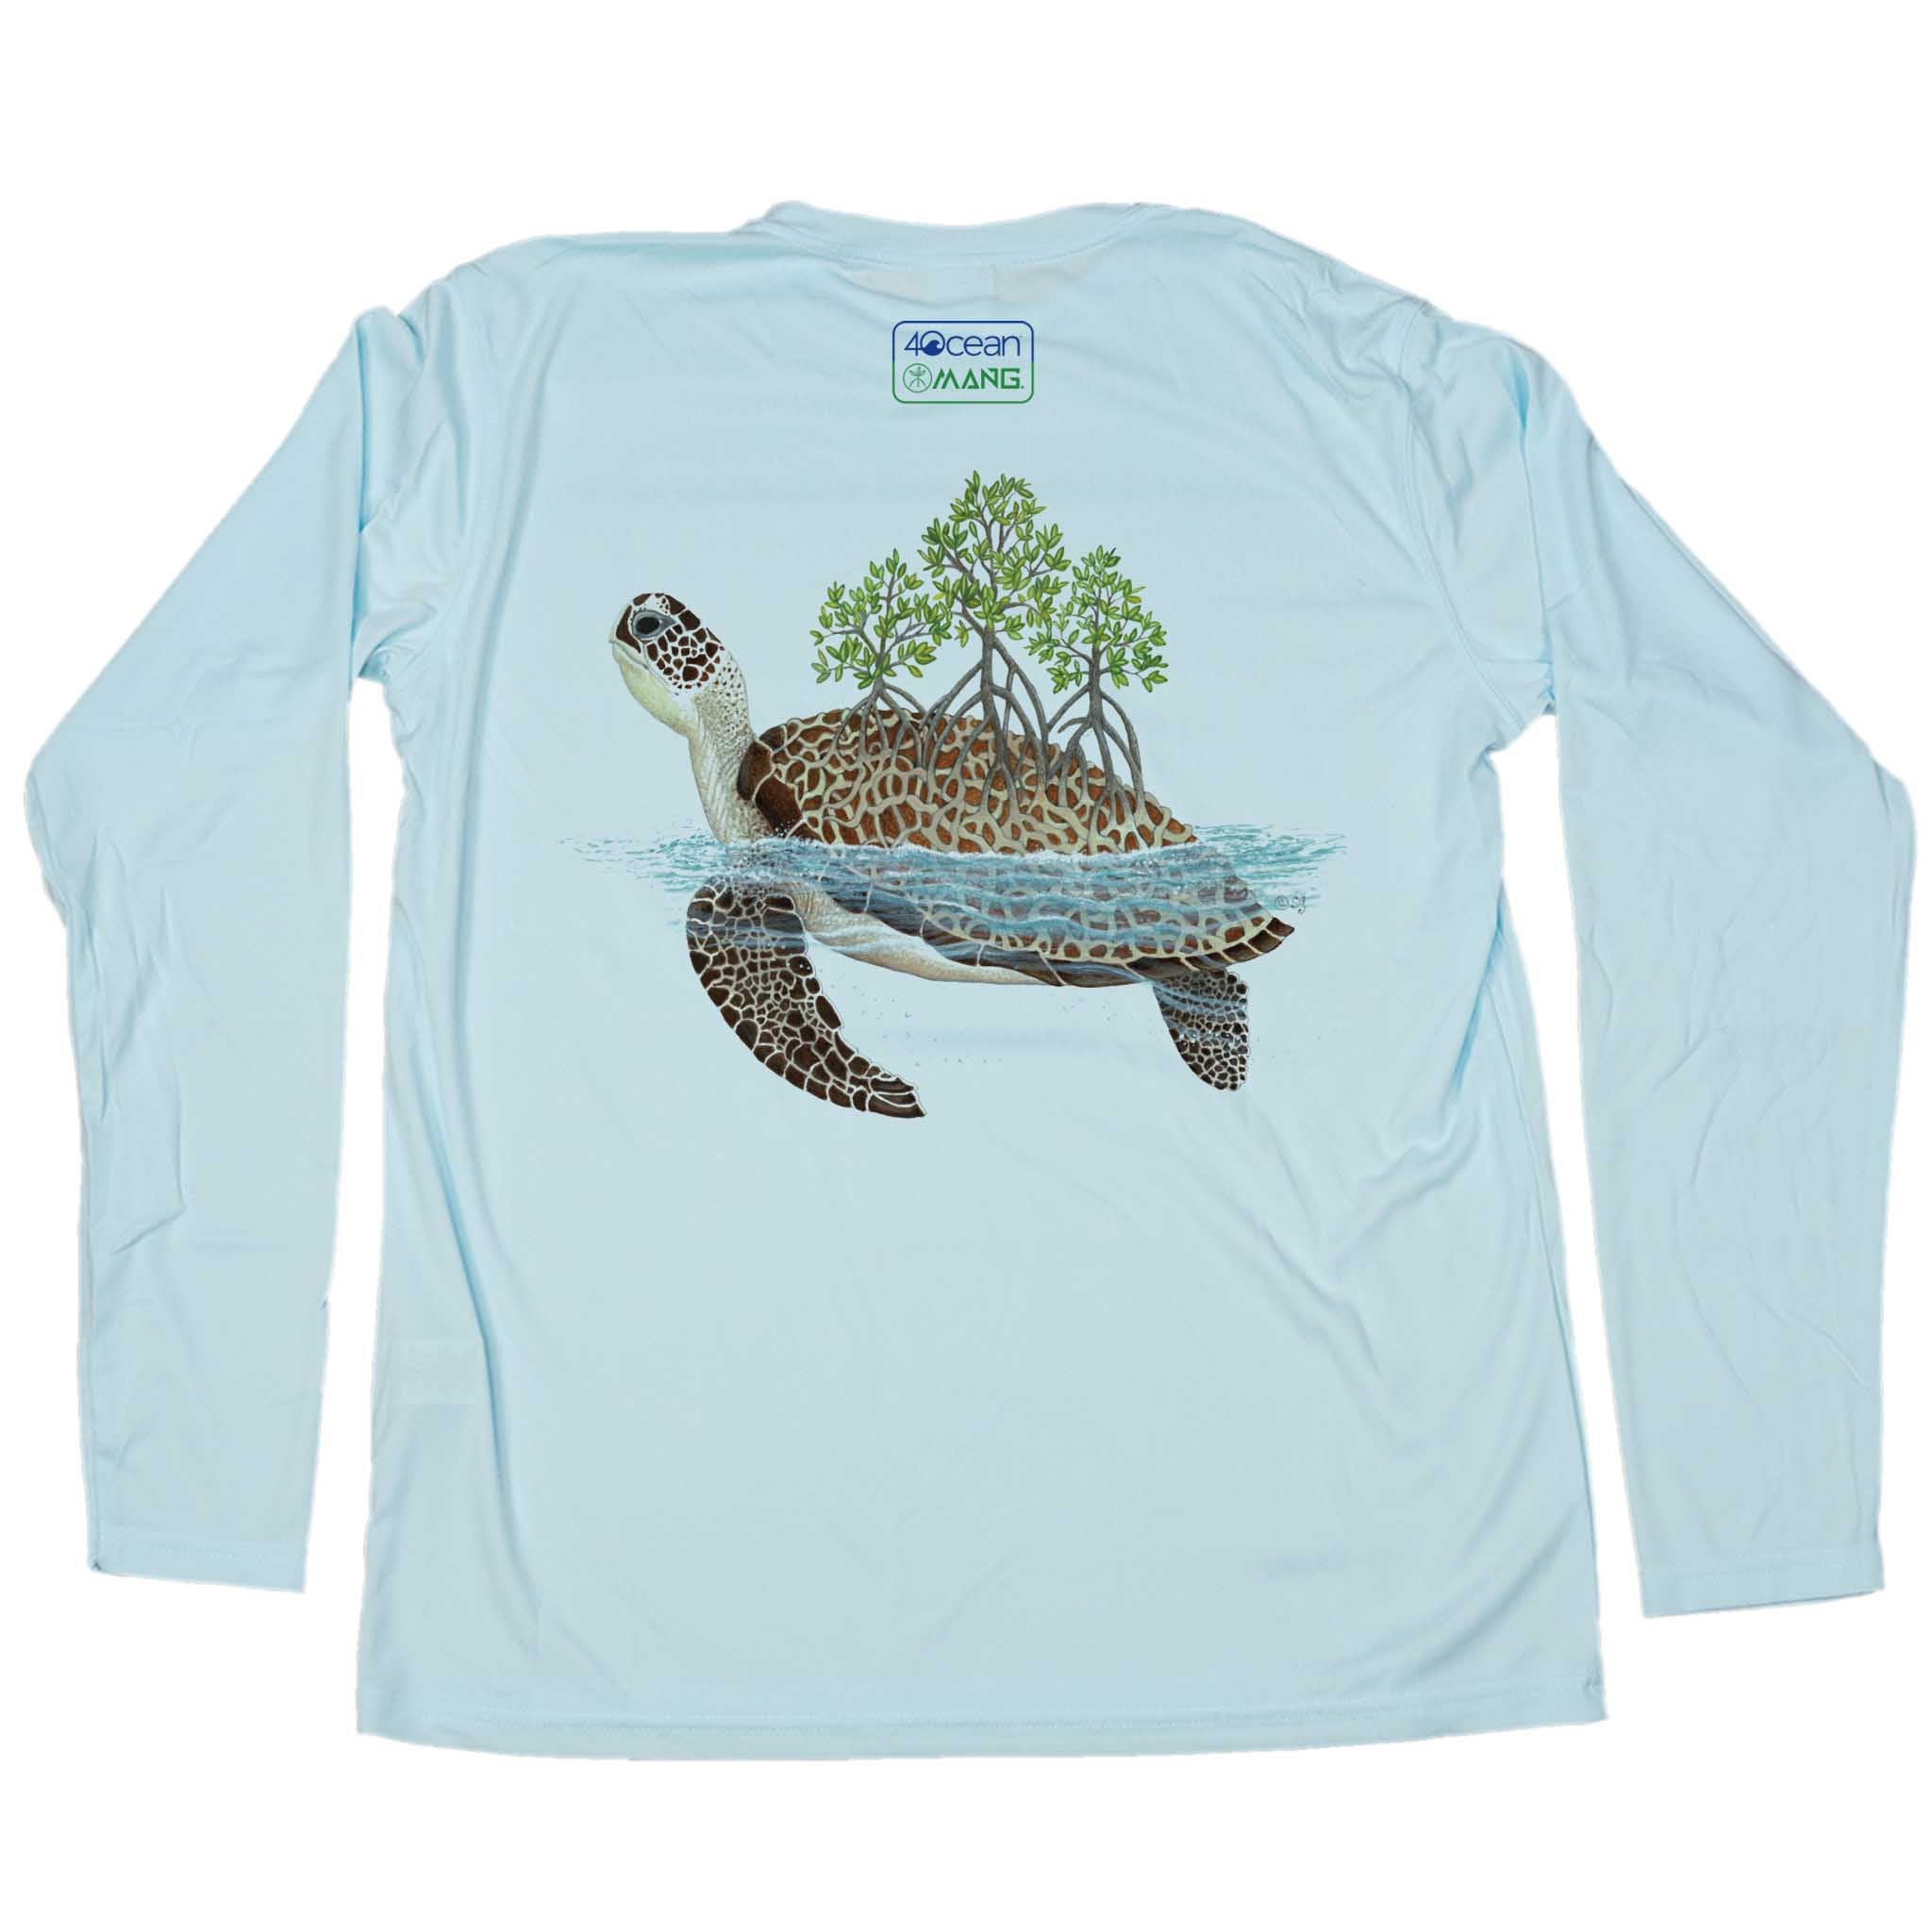 4ocean Turtle Eco LS - Men's